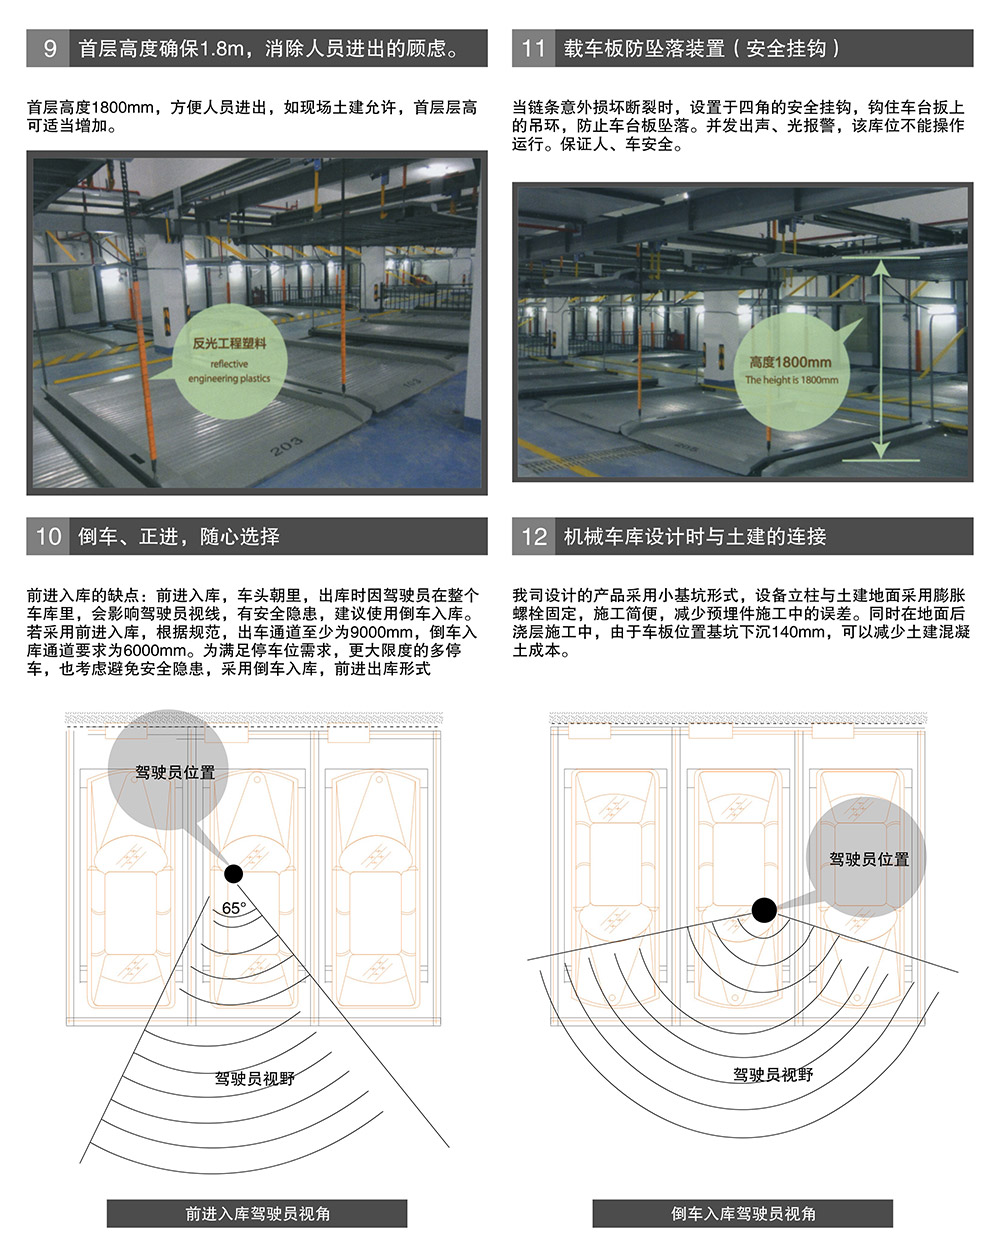 重庆负一正二地坑PSH3D1三层升降横移立体停车设备载车板防坠落装置.jpg